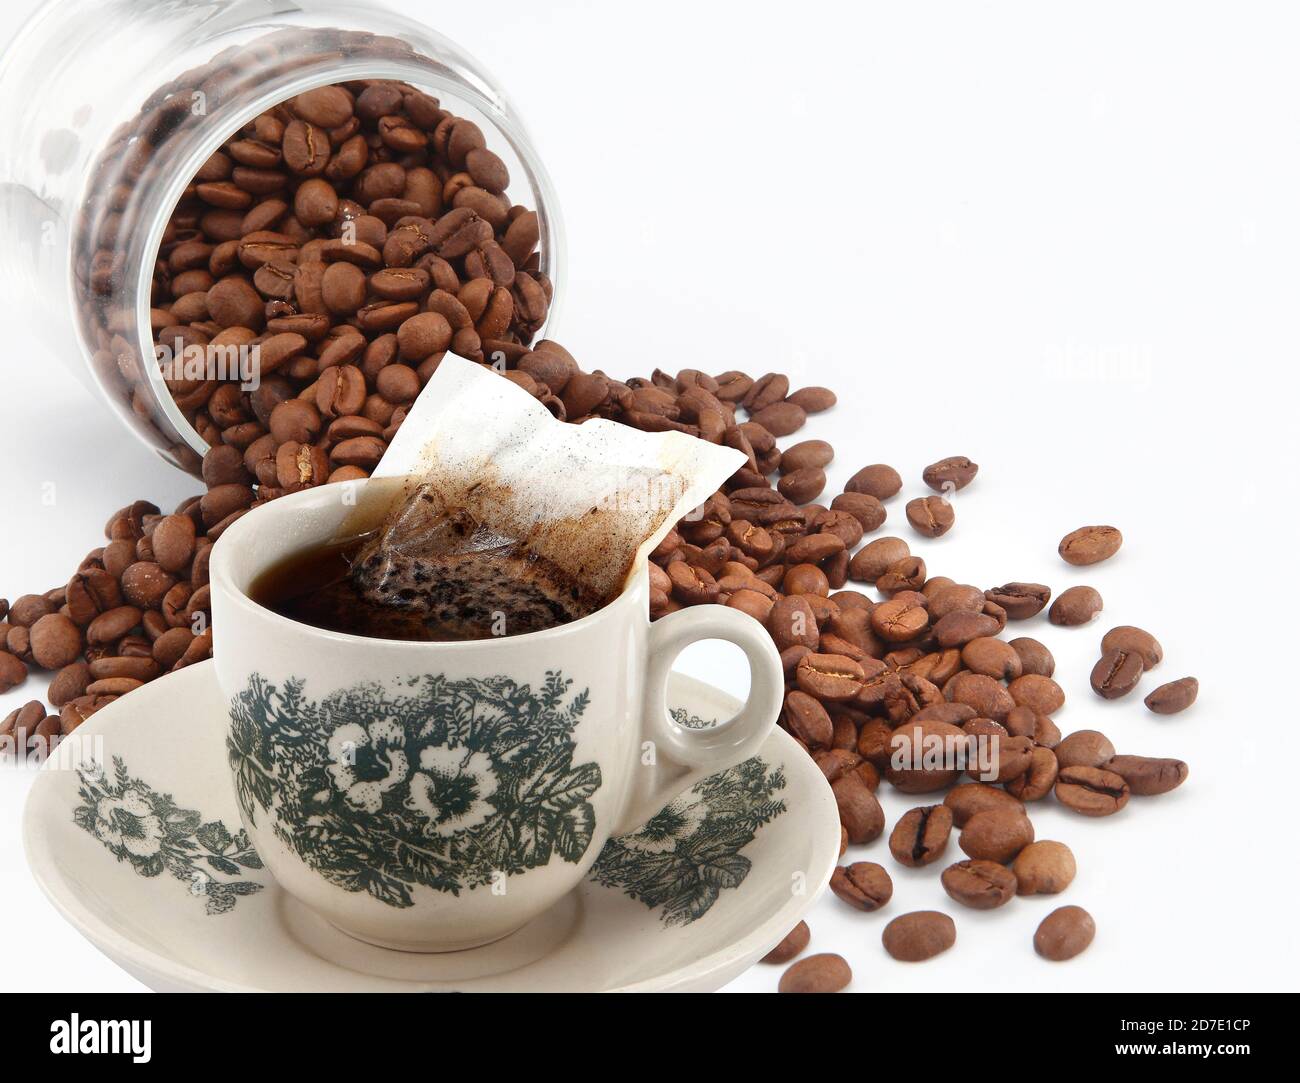 Kopi ist eine Art traditioneller Kaffee, der in Singapur und Malaysia  heimische ist. Es ist ein sehr koffeinhaltigen schwarzen Kaffee mit Milch  und Zucker serviert Stockfotografie - Alamy